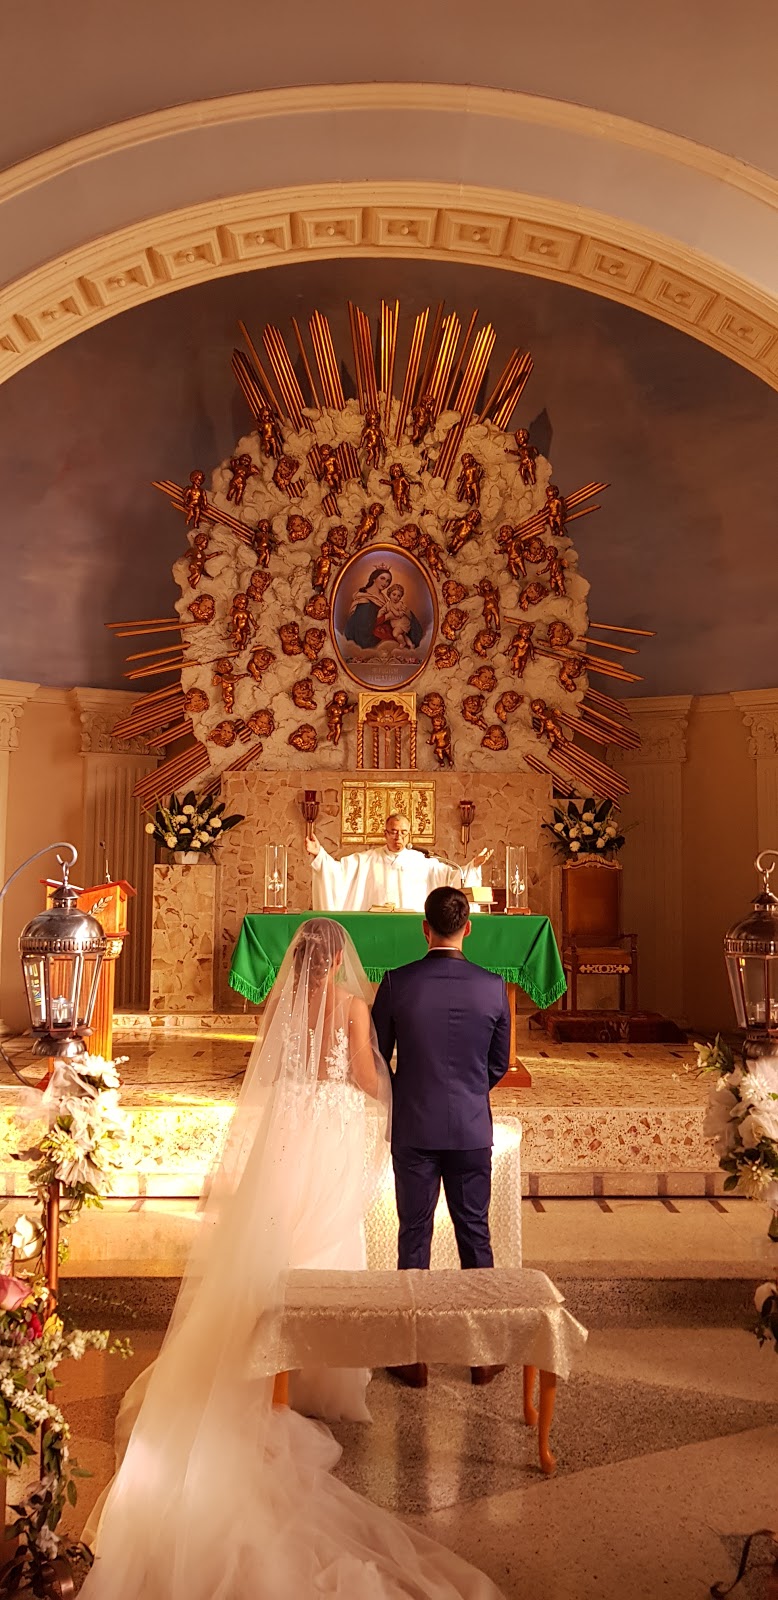 Parroquia Nuestra Señora del Refugio | Francisco Márquez 7611, Hidalgo, 22130 Tijuana, B.C., Mexico | Phone: 664 685 5288